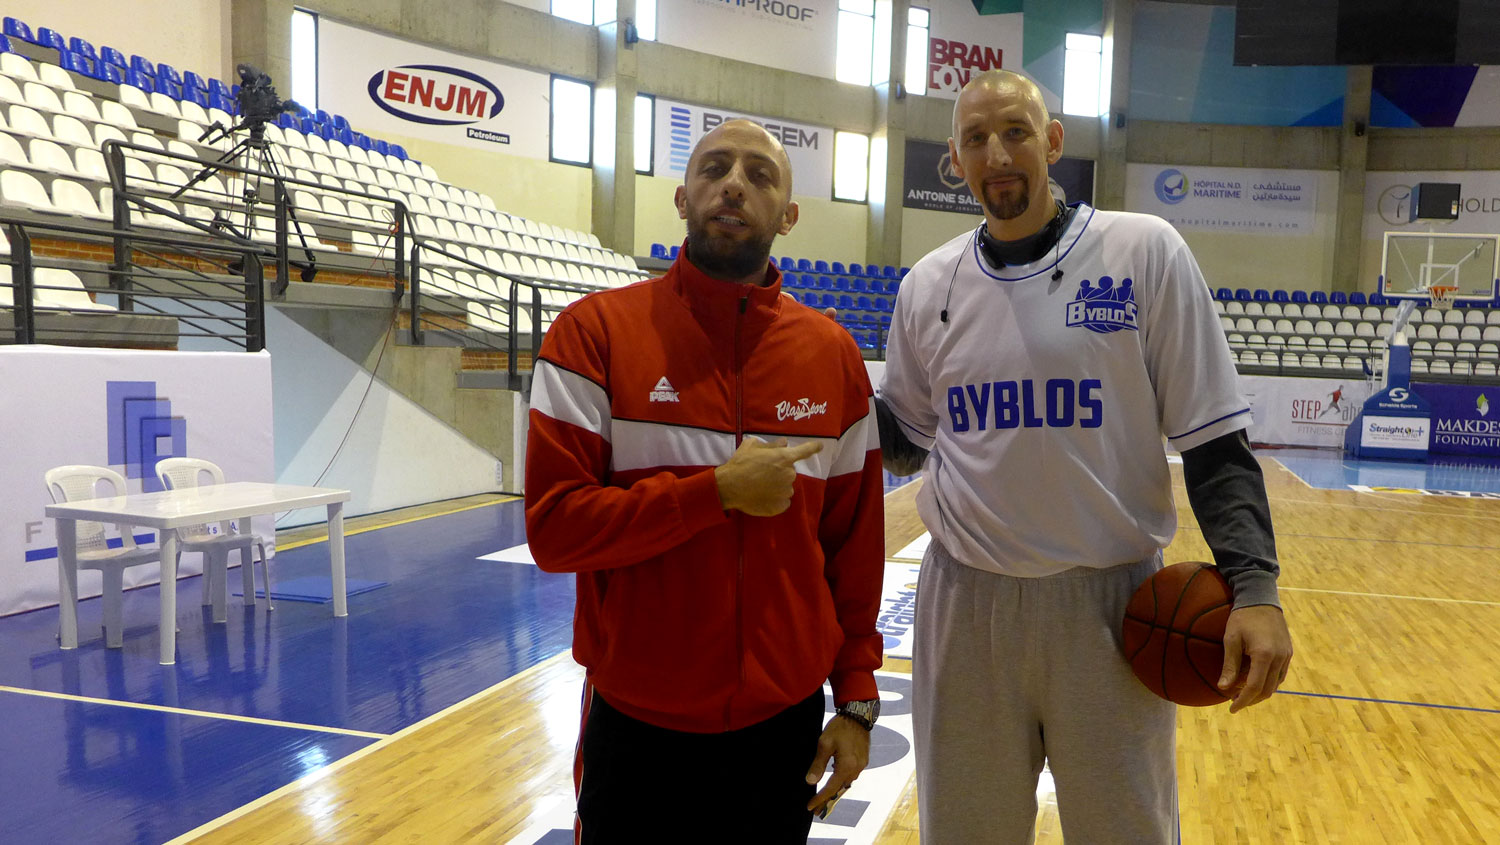 Mohammed aux côtés de Joseph Voguel qui joue à Byblos. C’est un des vétérans du basket libanais.